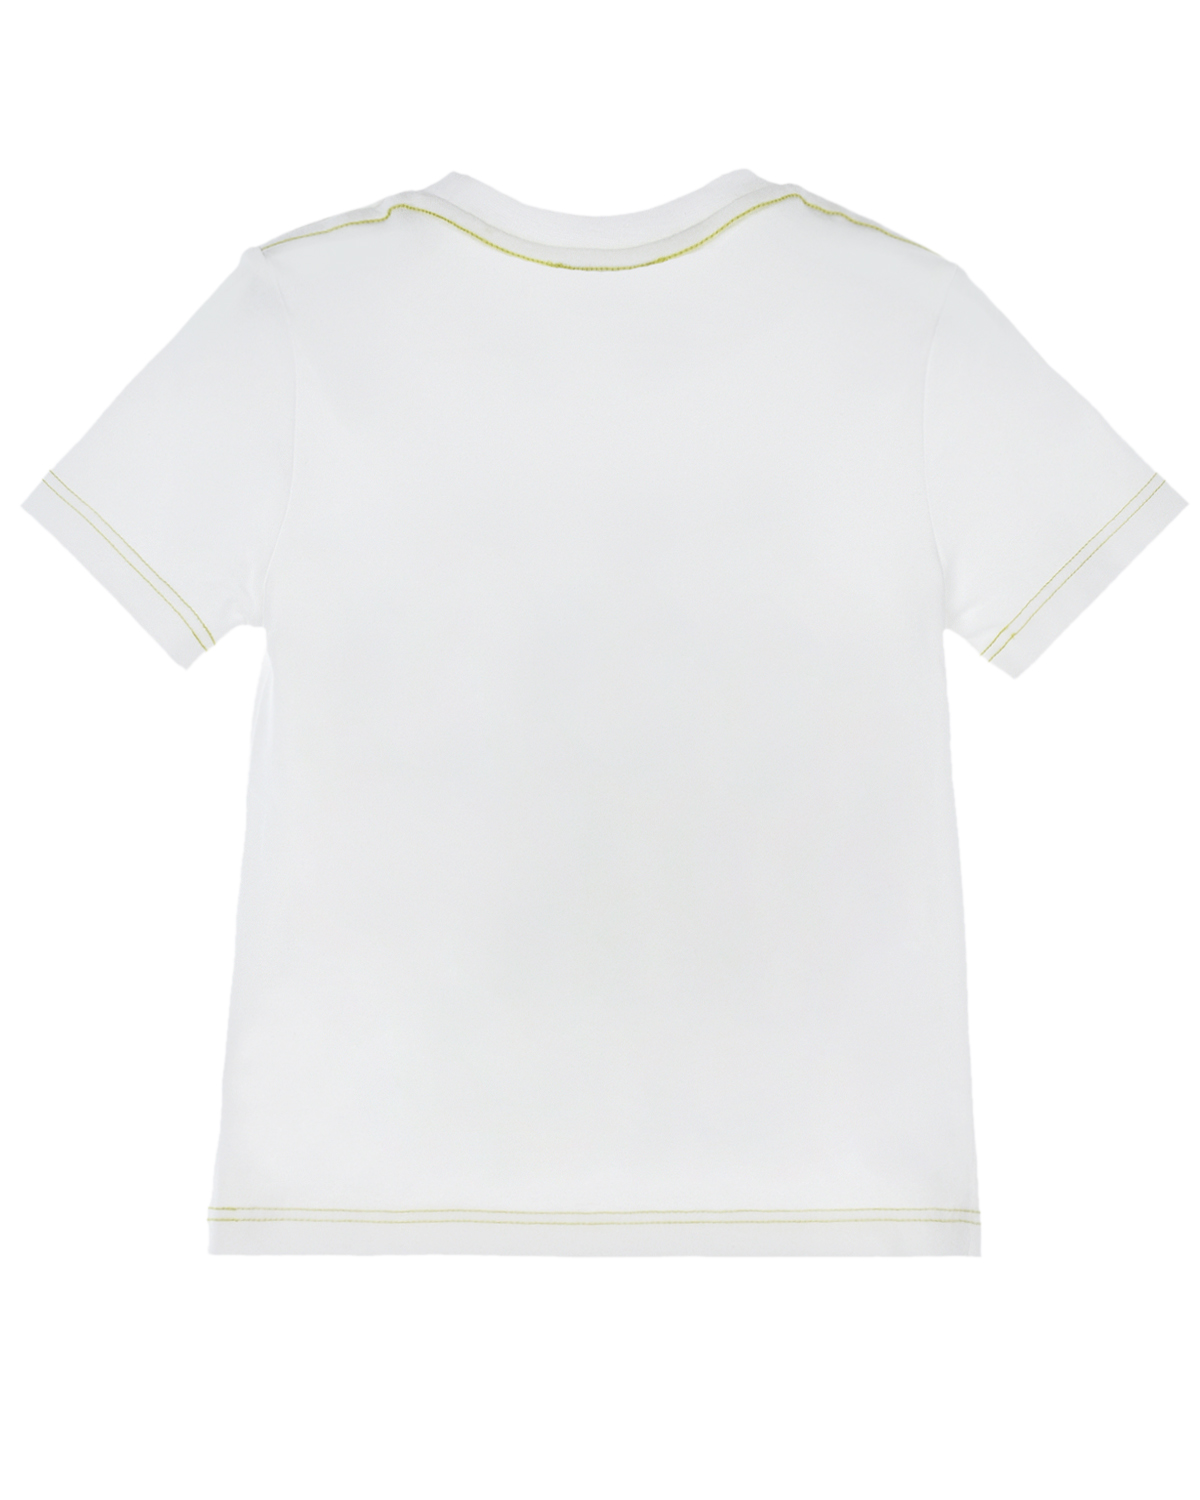 Белая футболка с принтом "город" Marc Jacobs (The) детская, размер 92, цвет белый Белая футболка с принтом "город" Marc Jacobs (The) детская - фото 2